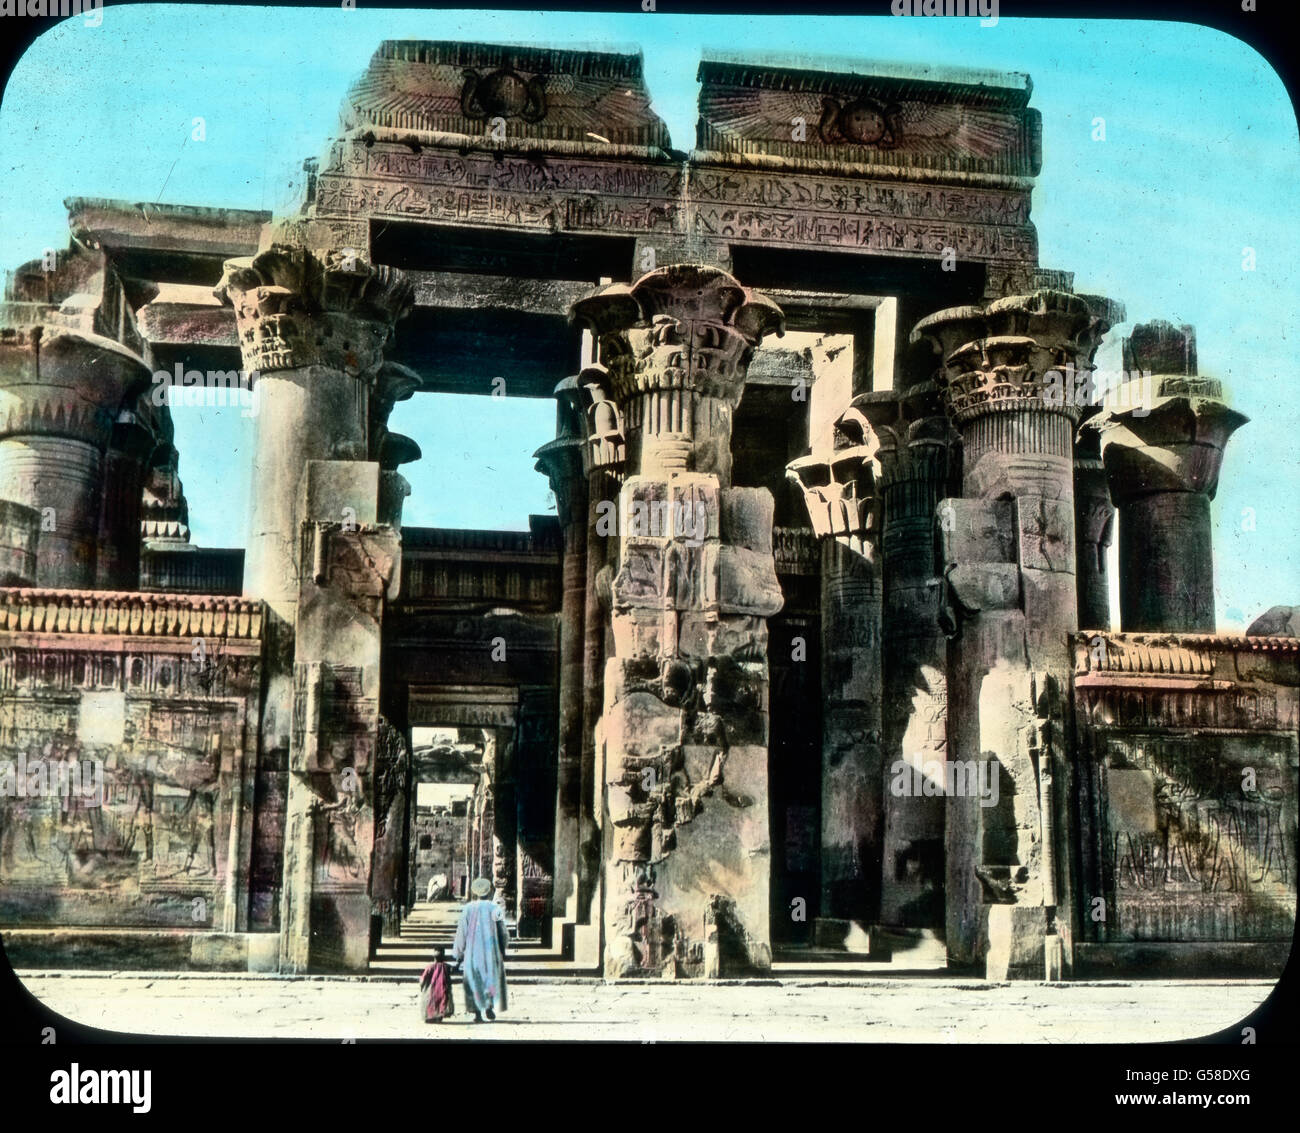 Ehe wir nach Kairo zurückkehren, besuchen wir noch den weniger bekannten Ombos-Tempel. Er kündet von einer Zeit, in der die sonst strenge ägyptische Kunst zu einer gewissen Übertreibung neigte, was in der Niedergangszeit der Fall zu sein scheint. Wie mächtig und doch zum Teil unmotiviert stehen die Säulen, wie überladen mit Schmuck.   Egypt, Kom Ombo, Temple of Ombos, Africa, Middle East, history, historical, 1910s, 20th century, travel, Upper Egypt, ancient, architecture, religion, belief, art, artwork, building, column, pillar, landmark, hand coloured glass slide Stock Photo